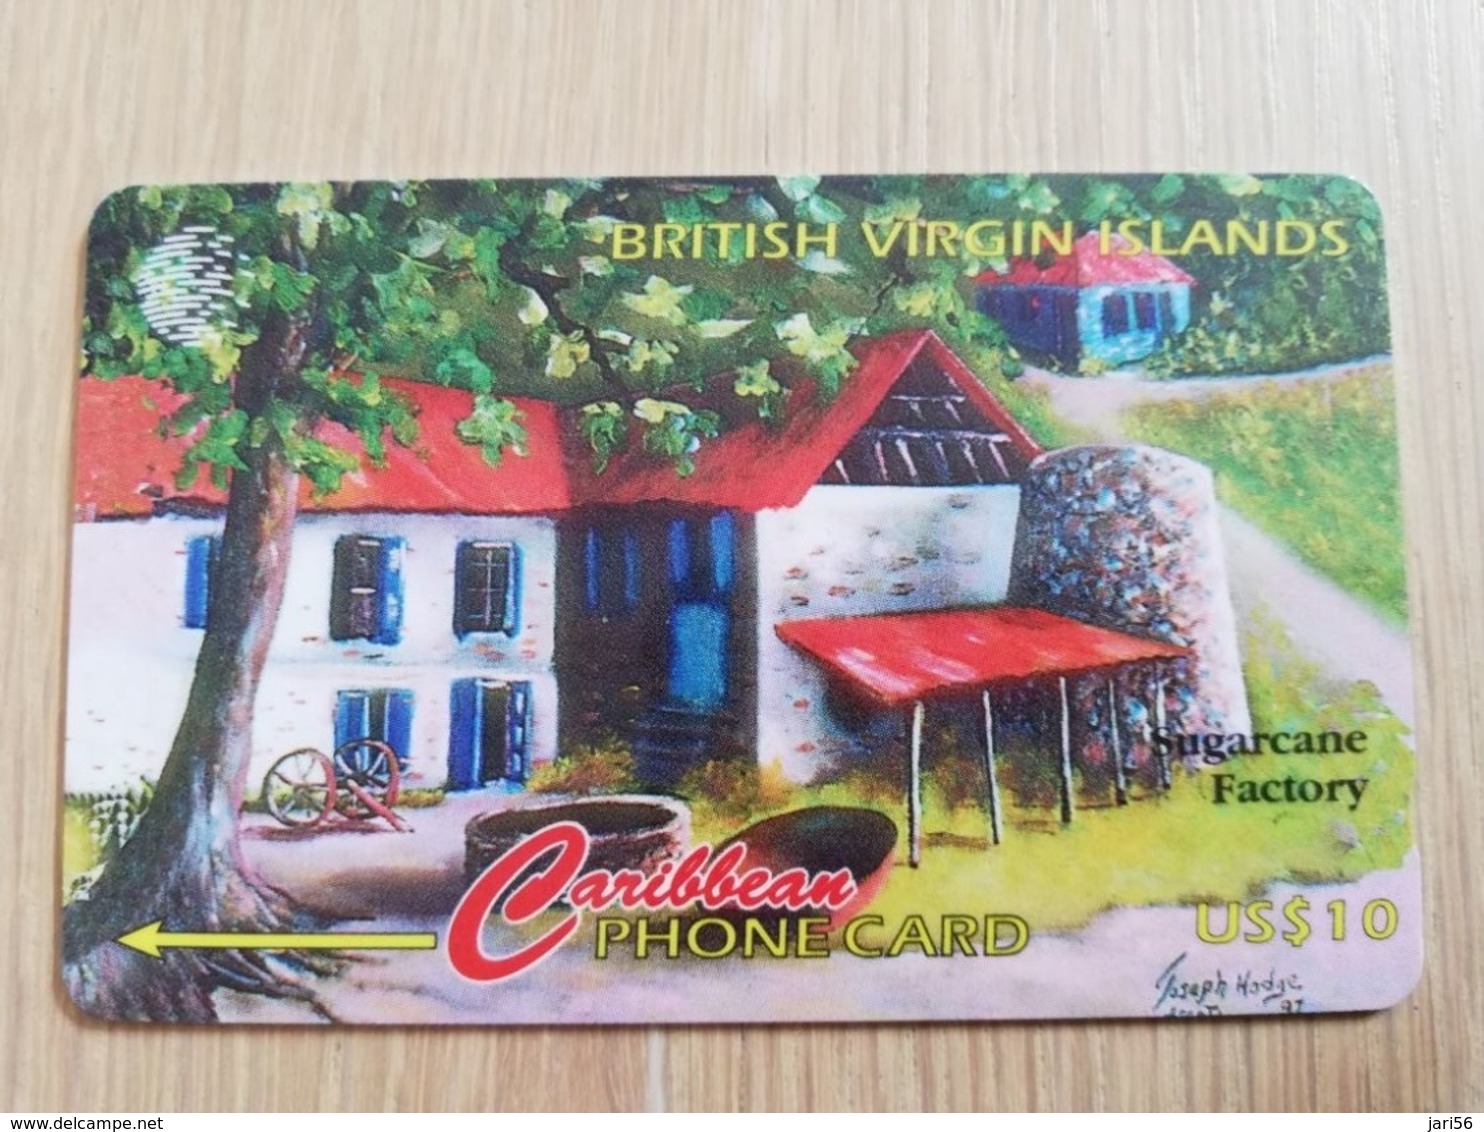 BRITSCH VIRGIN ISLANDS  US$ 10  BVI-193H   SUGARCANE FACTORY   193CBVH     Fine Used Card   ** 2690** - Maagdeneilanden